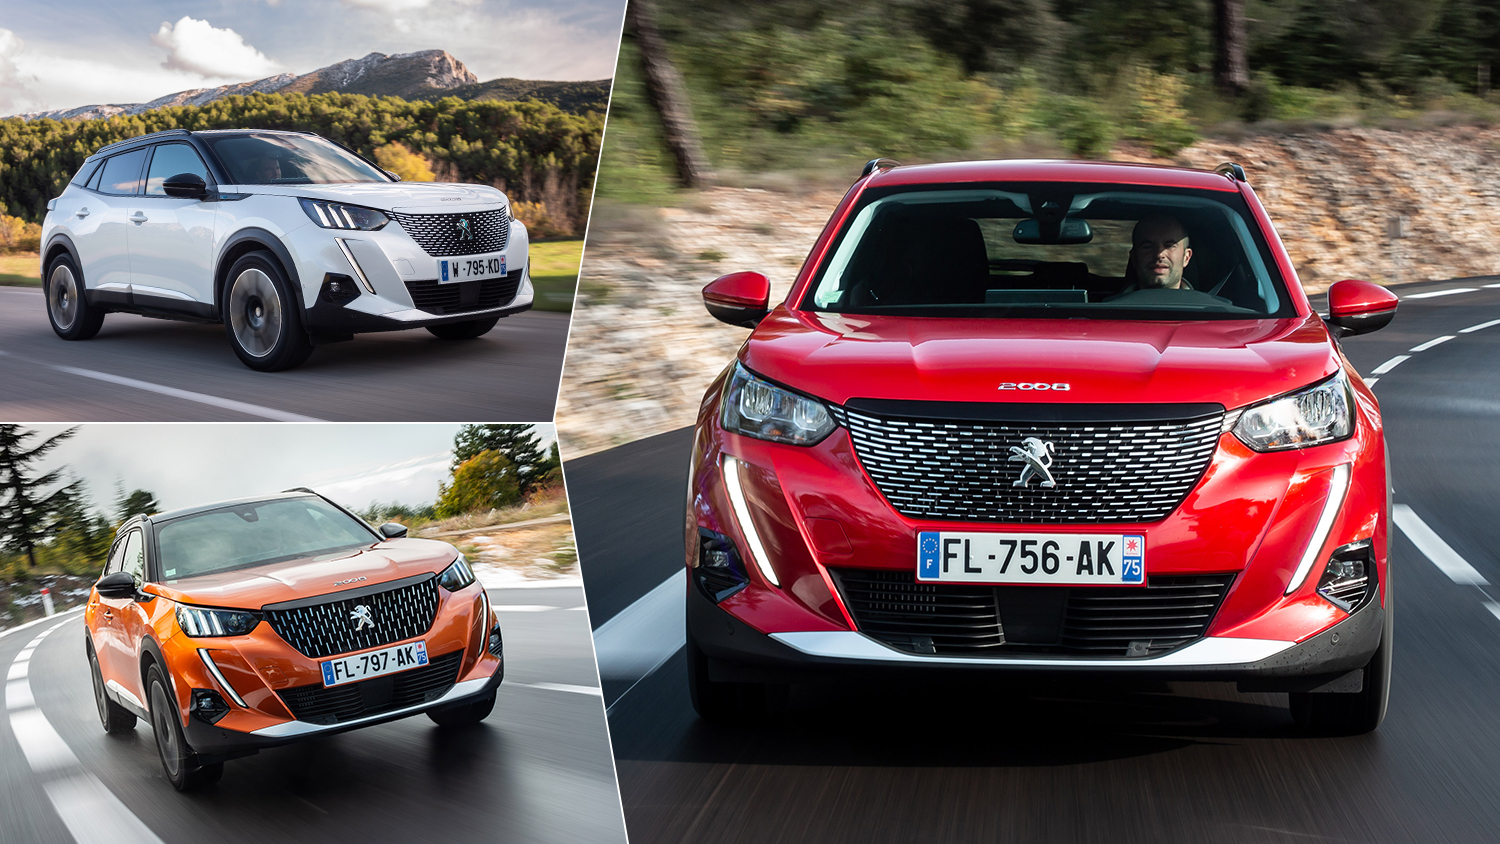 Автомобили Peugeot - модельный ряд, характеристики и комплектации